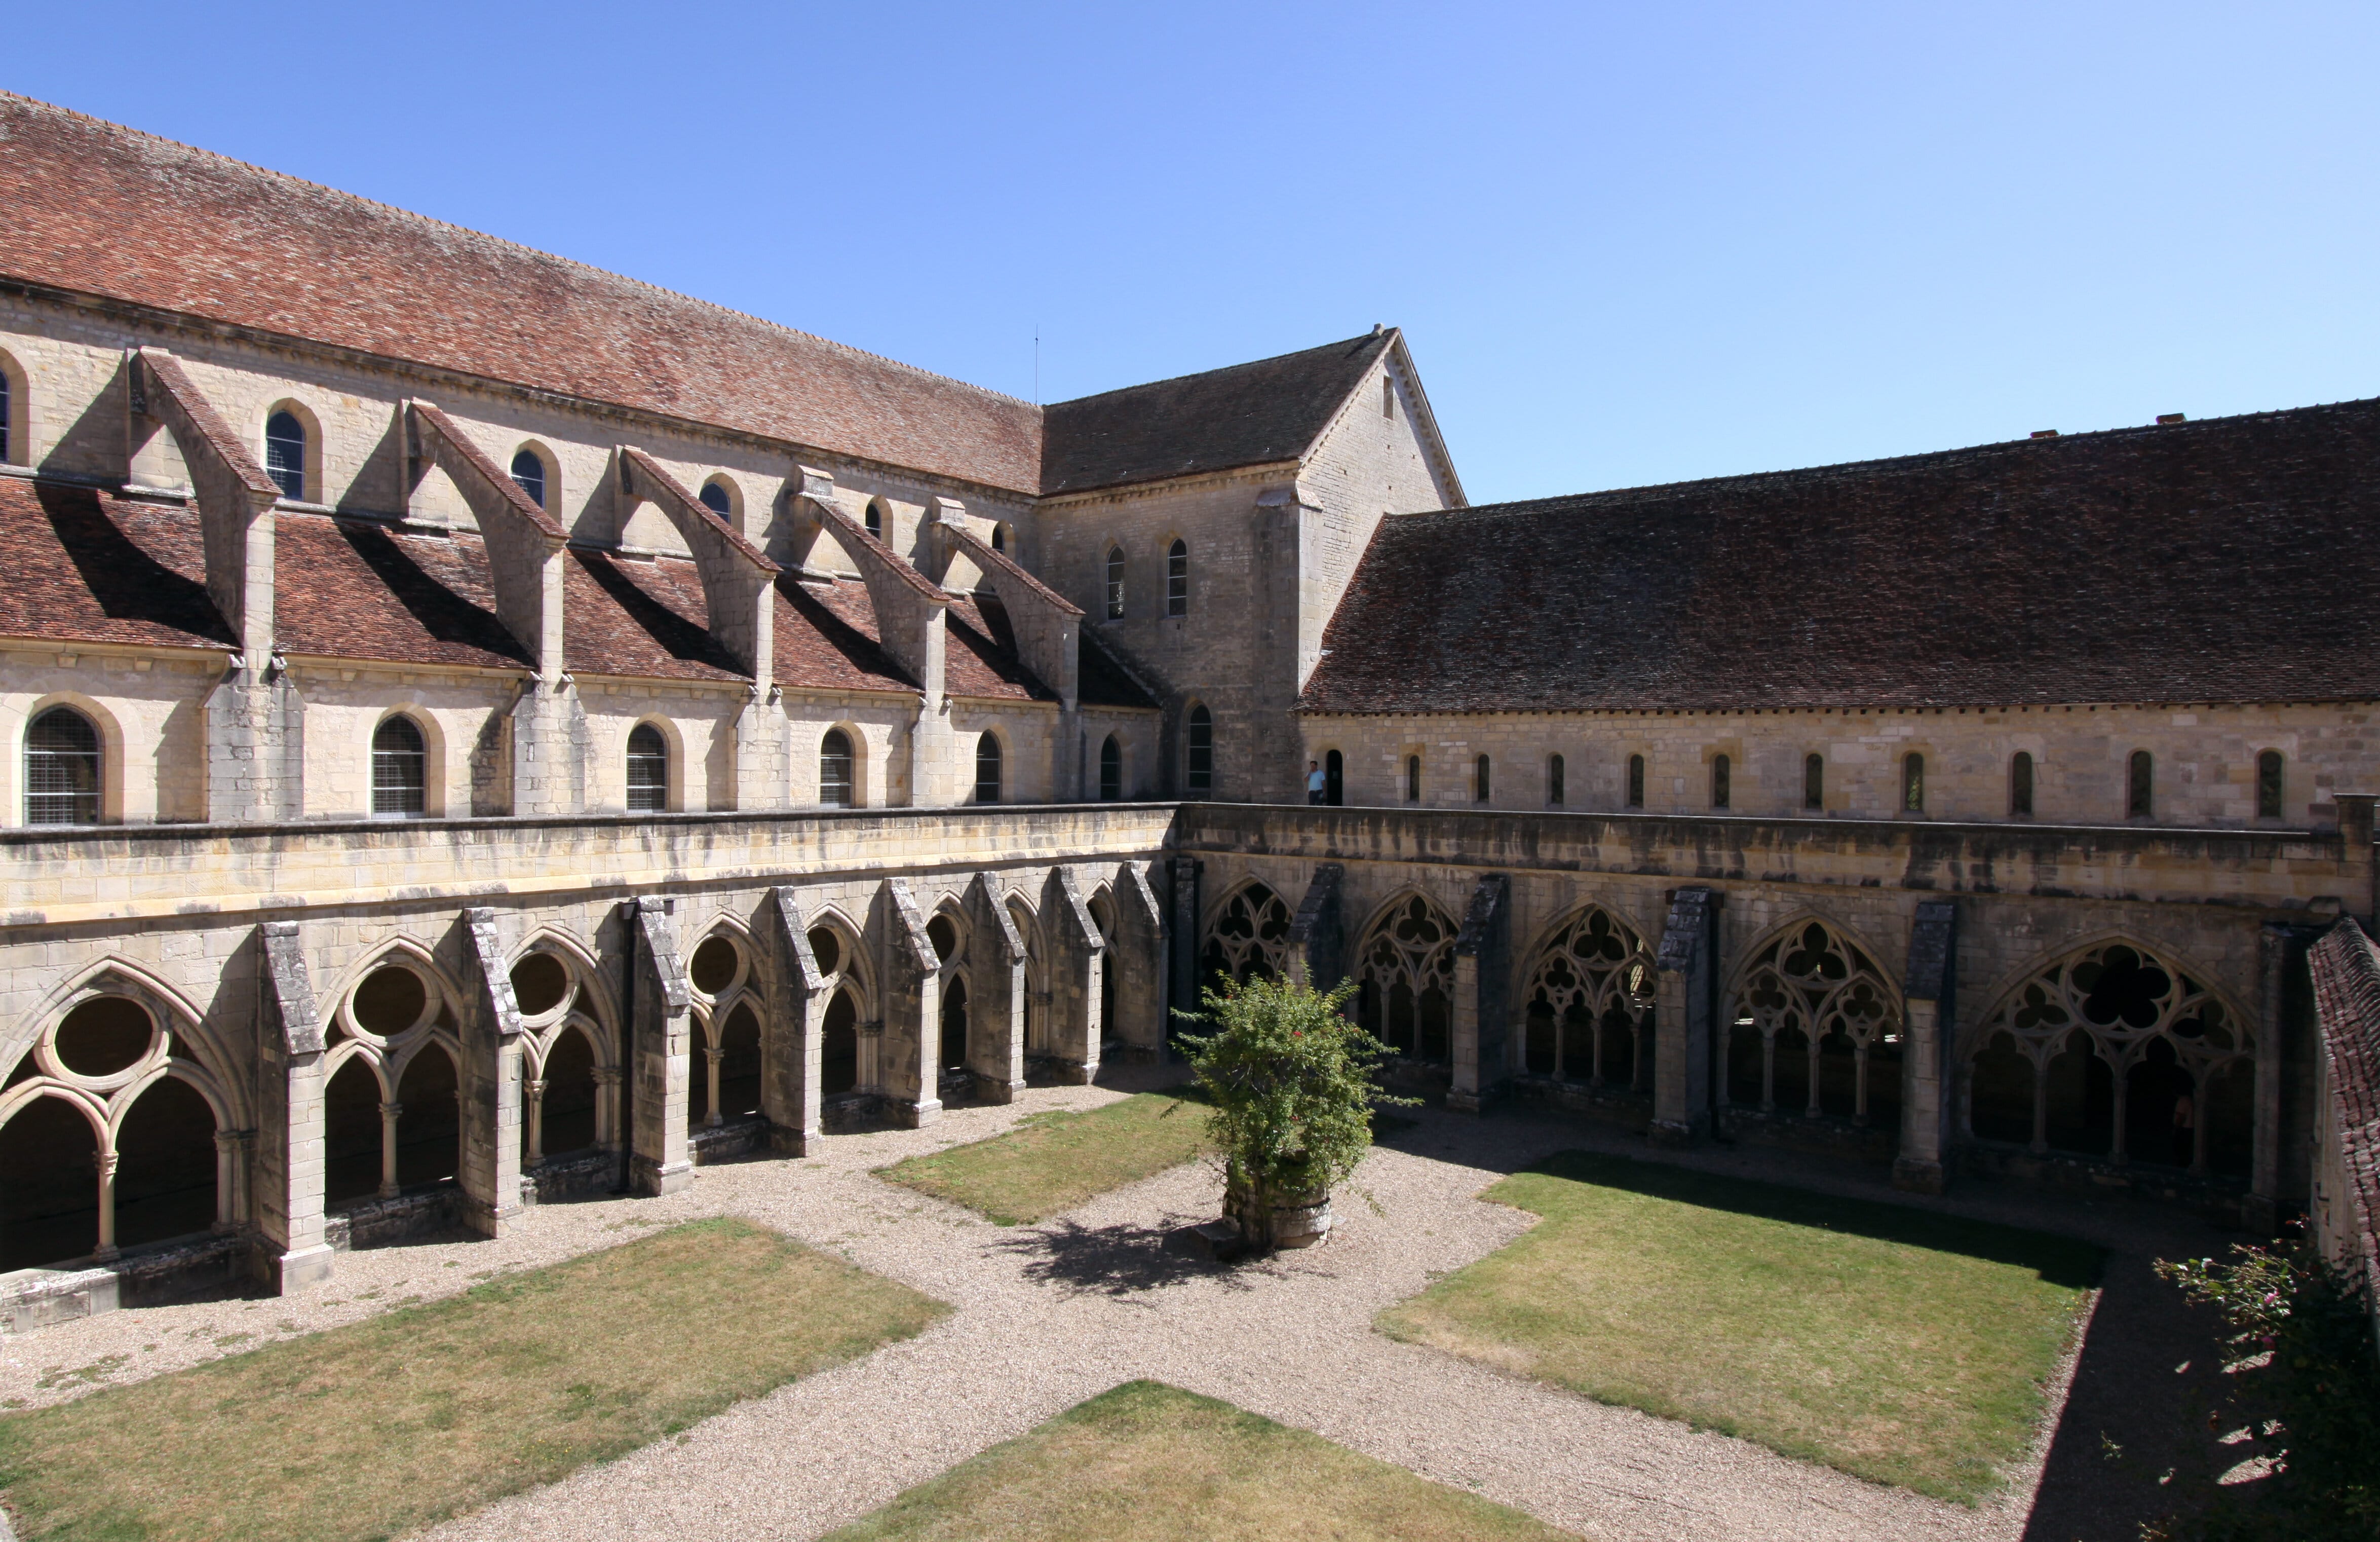 Abbaye de Noirlac - Centre culturel de rencontre